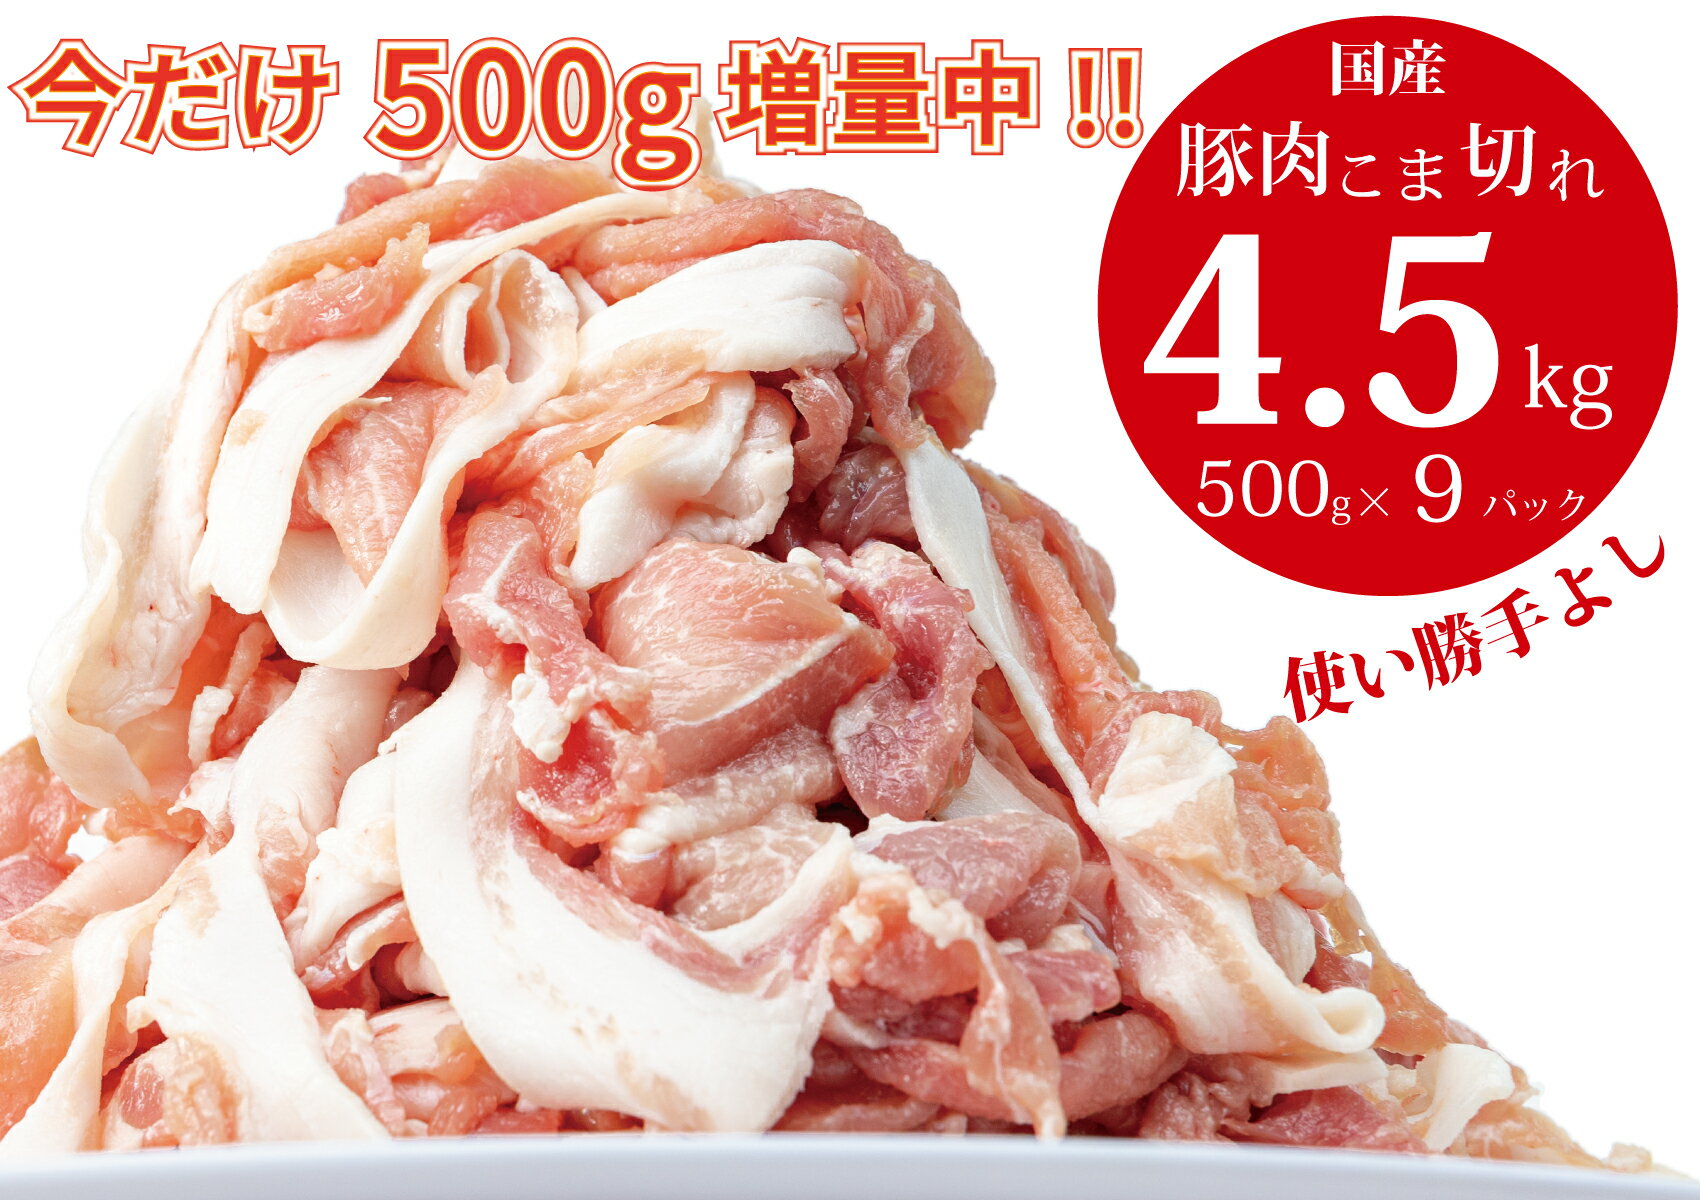 [3月末までの期間限定!] 豚肉 切り落とし こま切れ 4.5kg ( 500g x 9袋) 小分け 冷凍 国産 香川県 善通寺市 人気